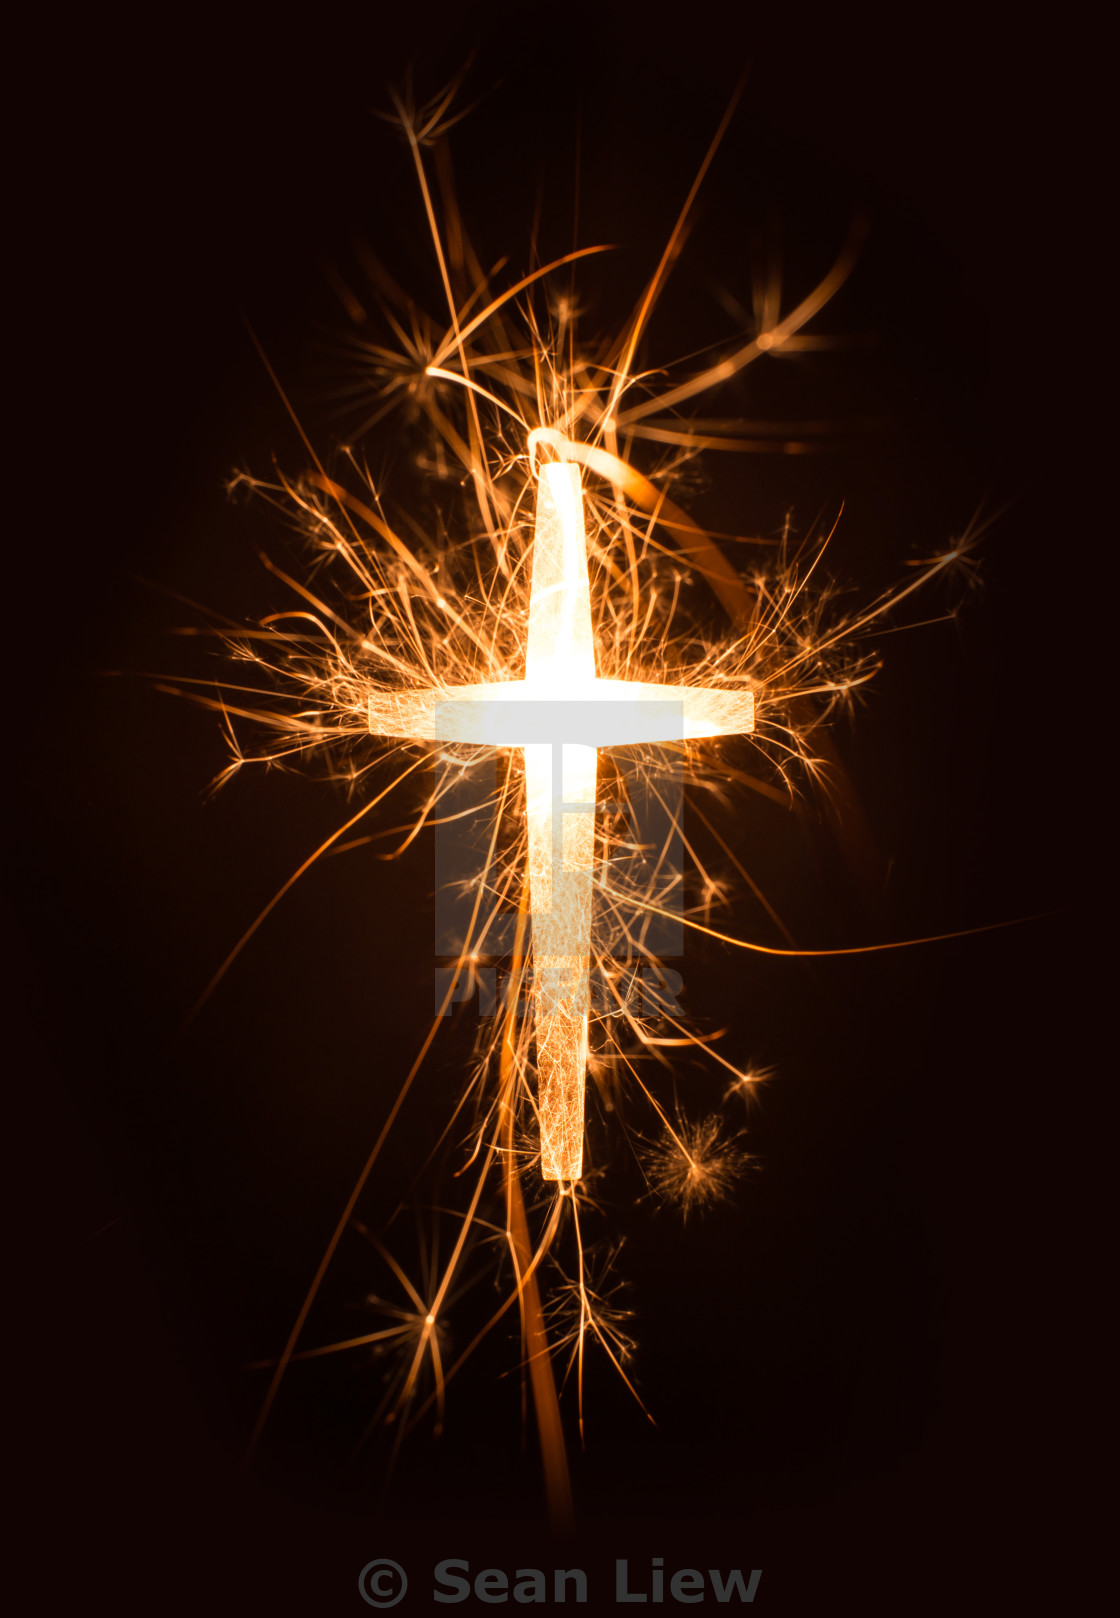 Sparkling Cross: Những tín đồ yêu thích sự lấp lánh và đẹp mắt chắc chắn sẽ hào hứng khi xem bức ảnh liên quan đến Sparkling Cross. Chúng sẽ cảm thấy như đang ngắm một ngôi sao lấp lánh trên bầu trời đêm.